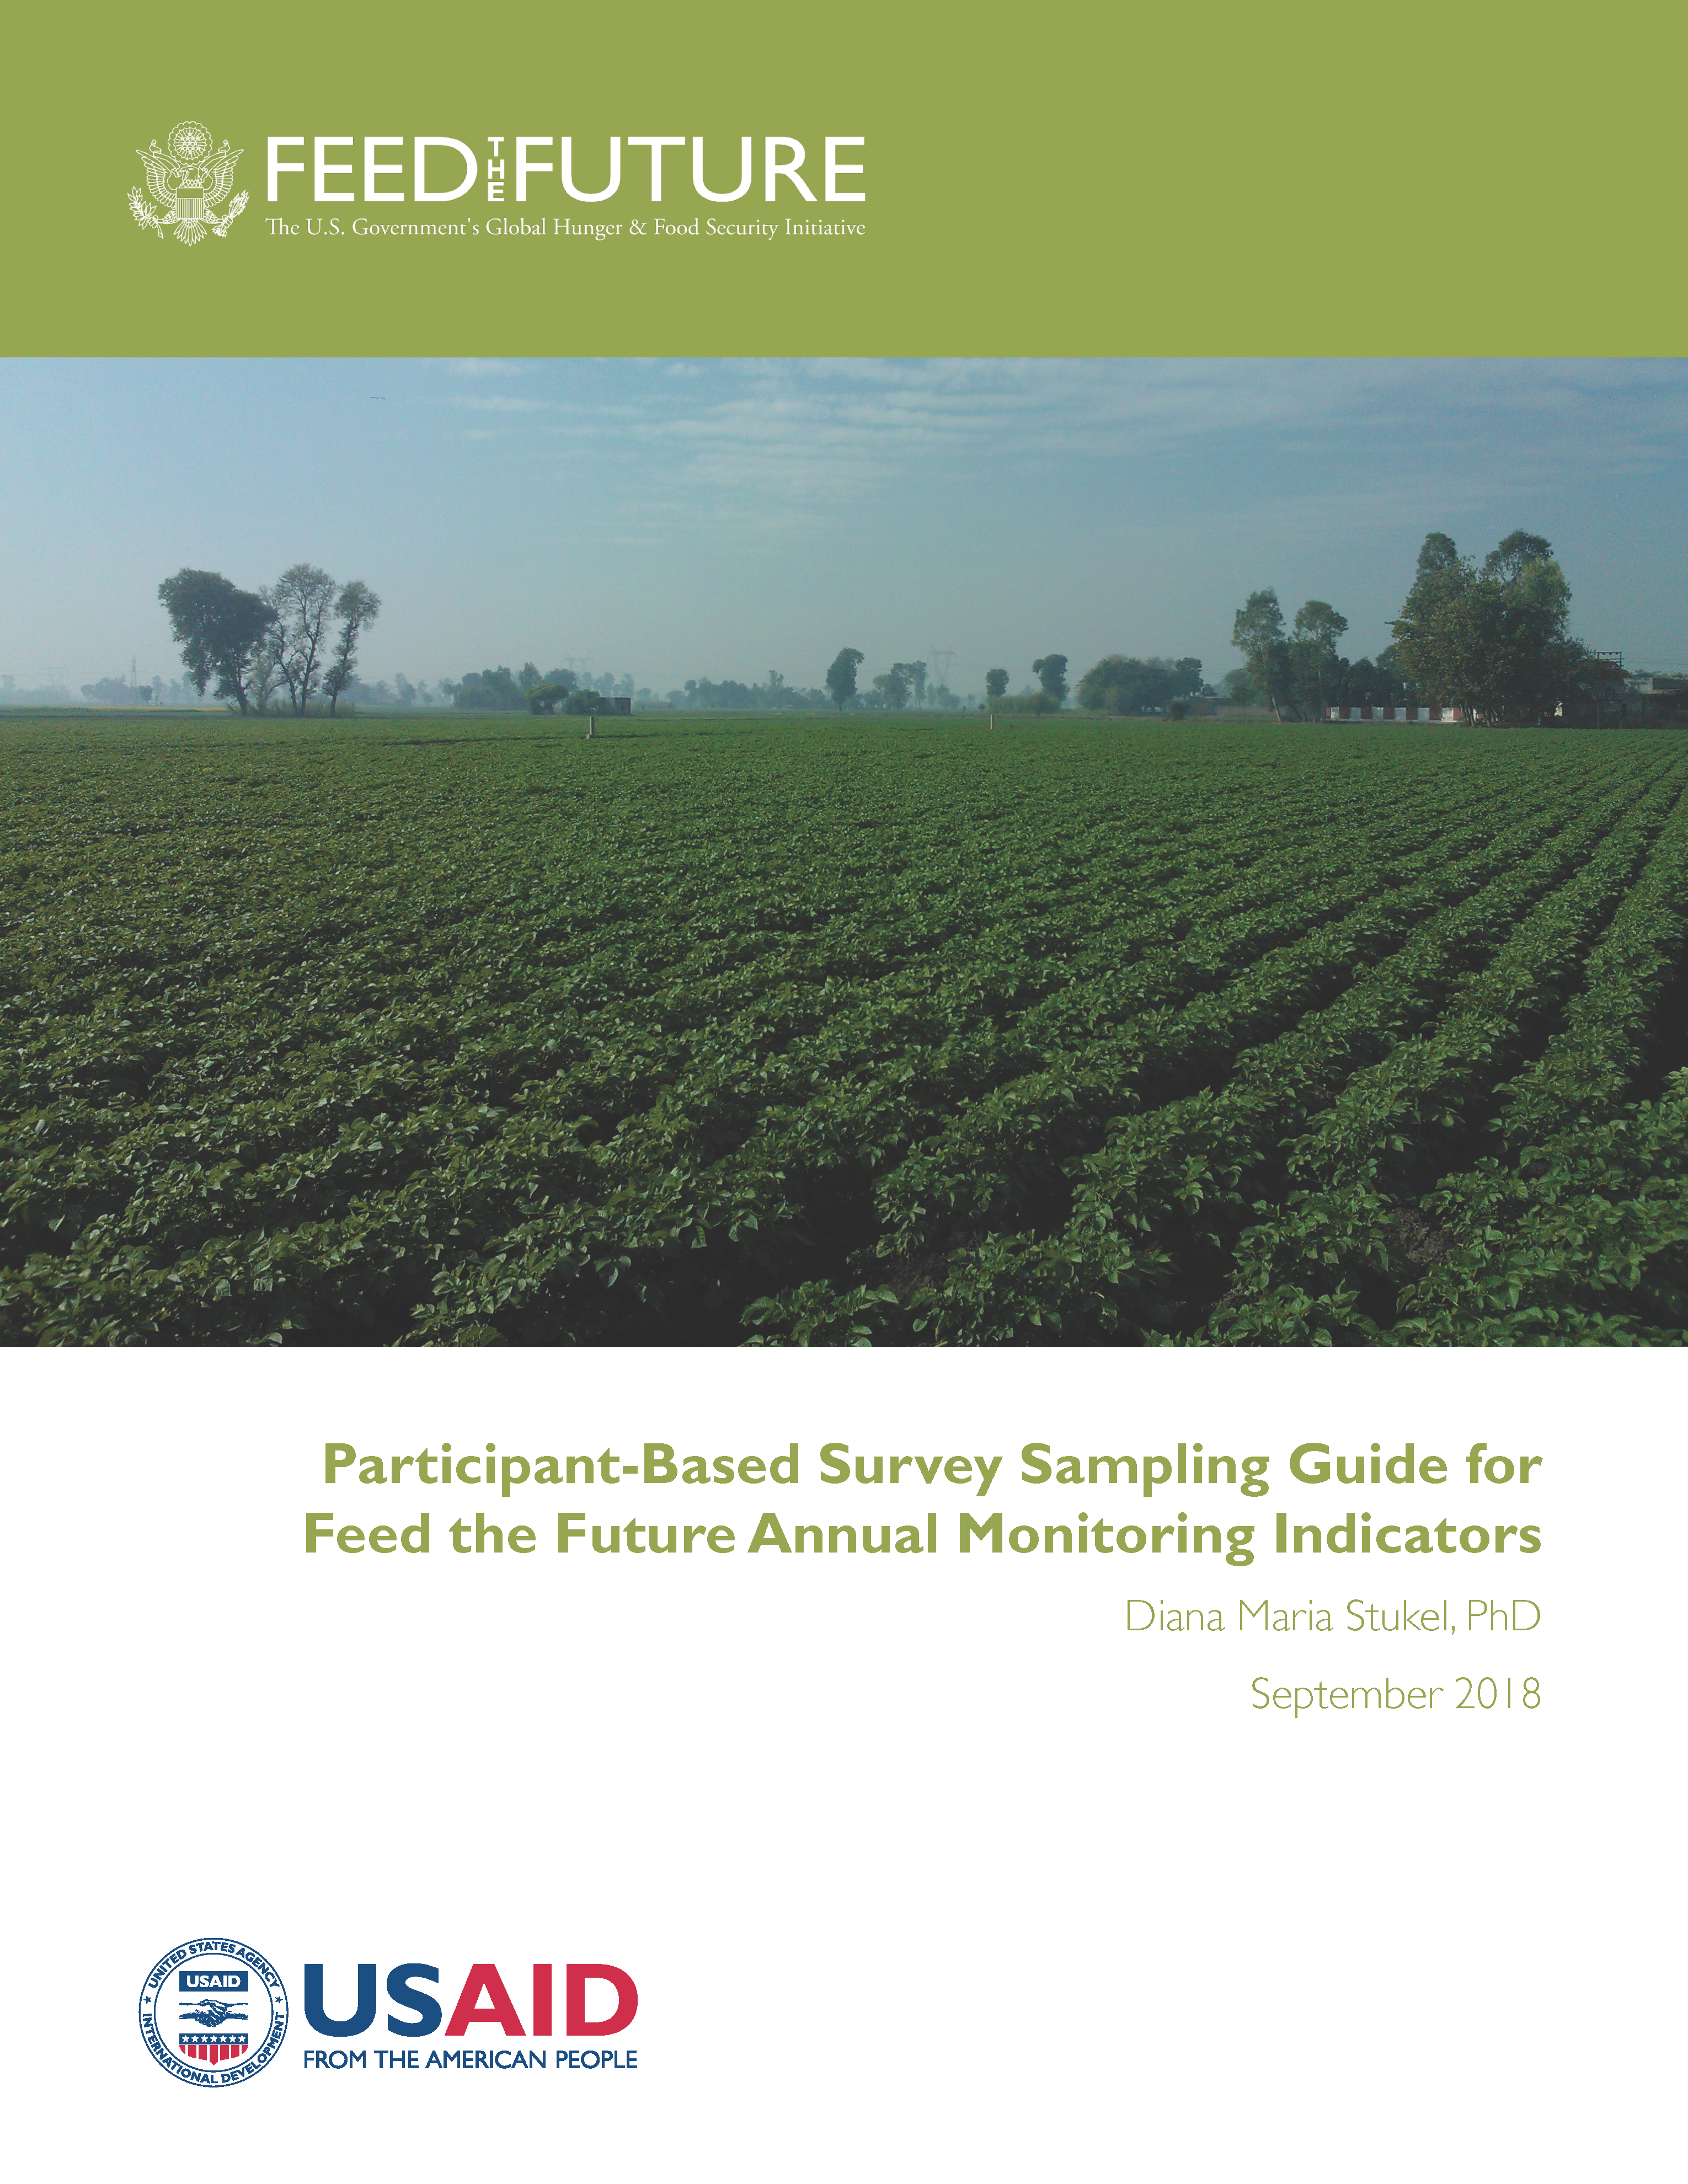 Page de couverture du guide d'échantillonnage des enquêtes basées sur les participants pour les indicateurs de suivi annuels Feed the Future